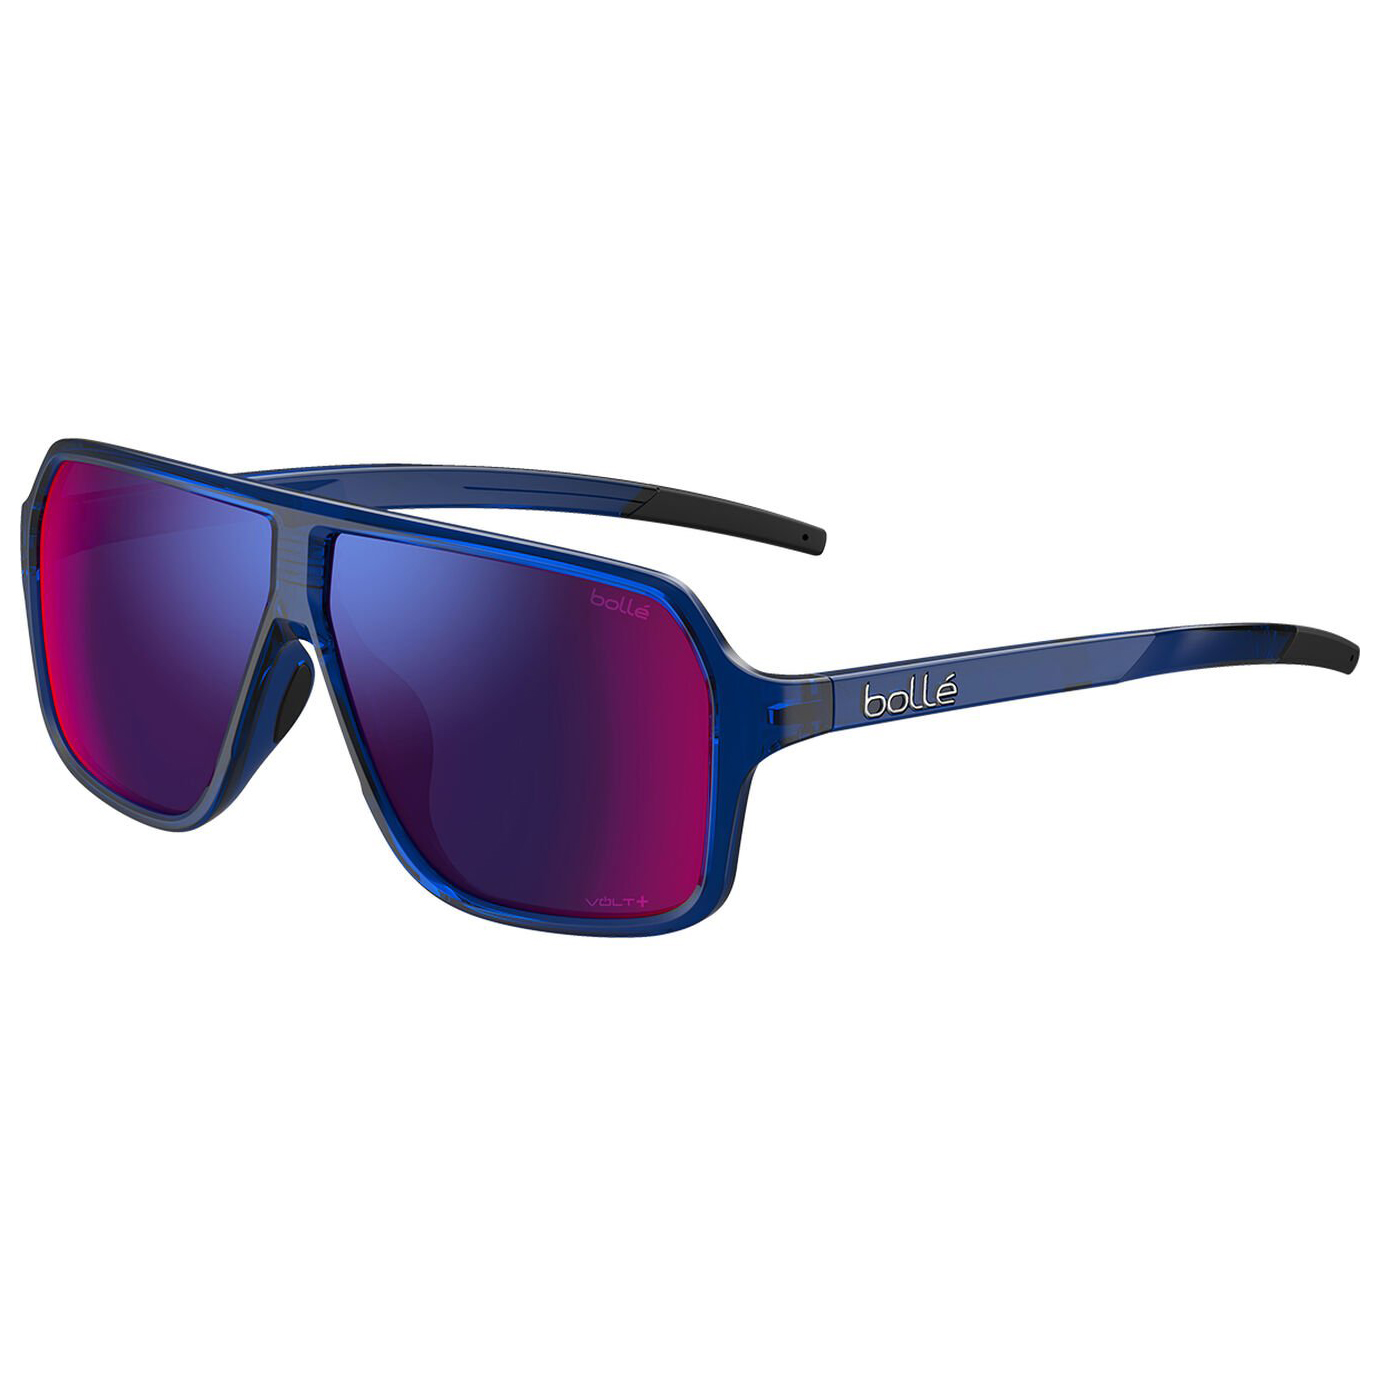 Солнцезащитные очки Bollé Prime Polarized S3 (VLT 16%), цвет Navy Crystal Shiny цена и фото